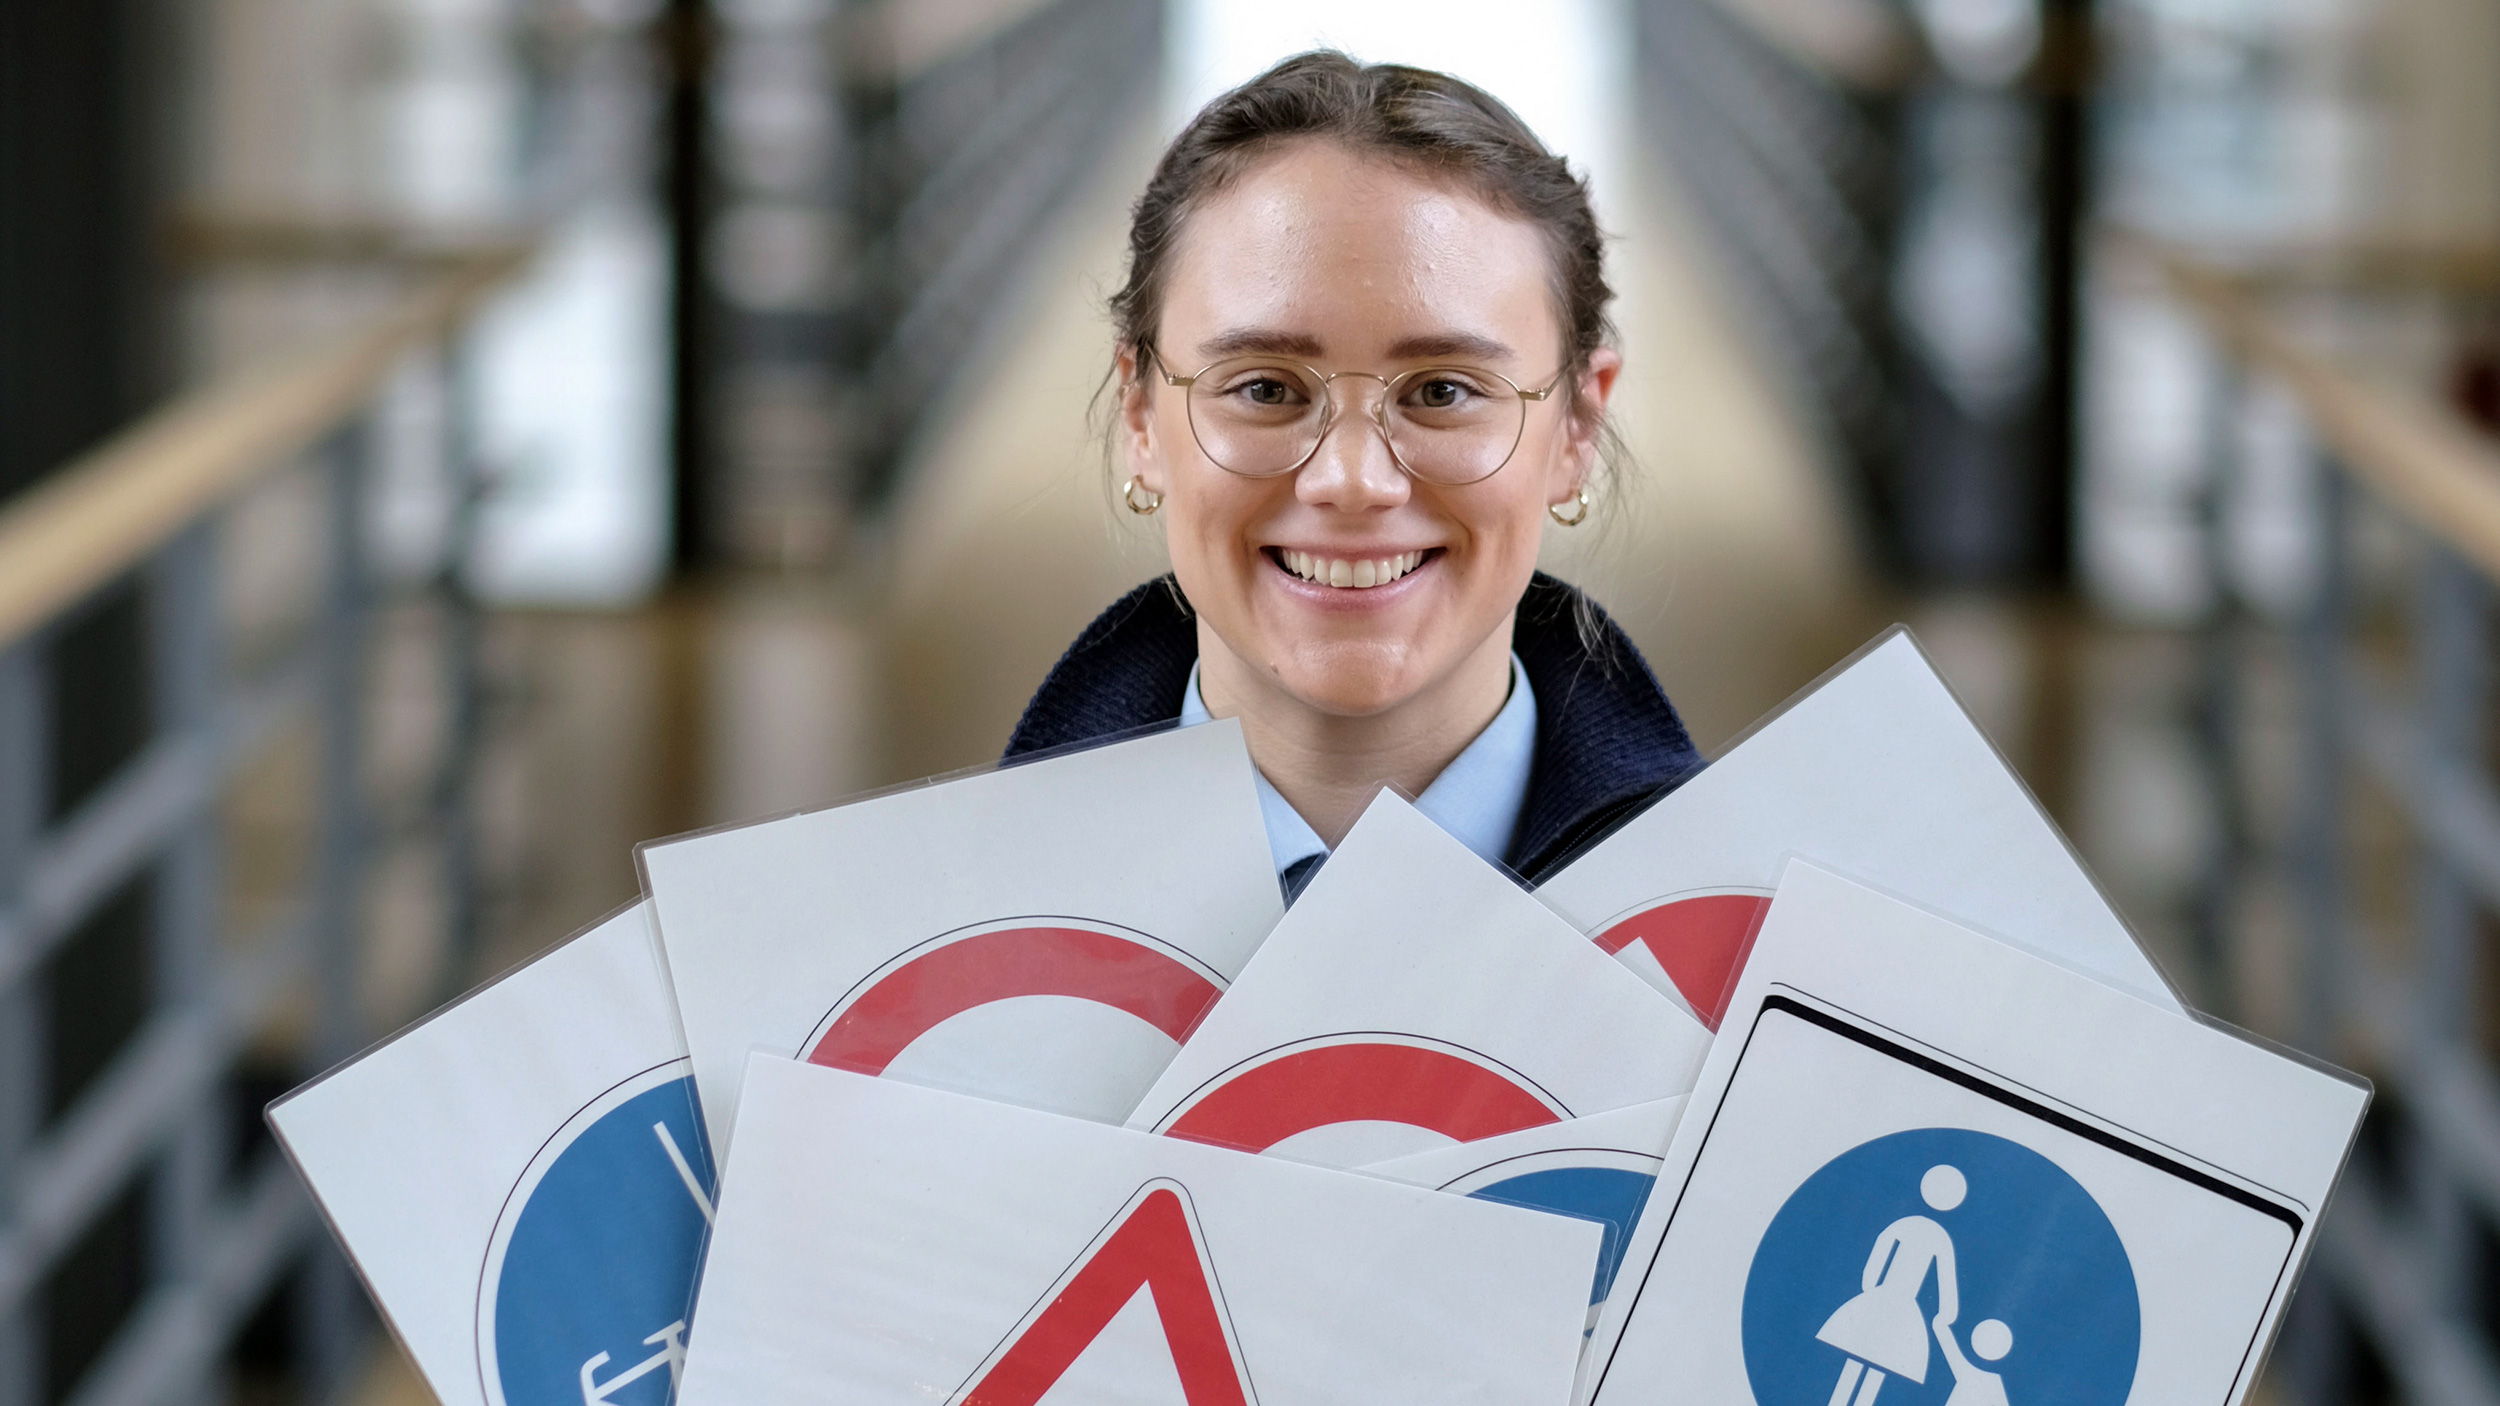 Junge Frau hält verschiedene Tafeln in den Händen, auf denen Verkehrsschilder abgebildet sind.